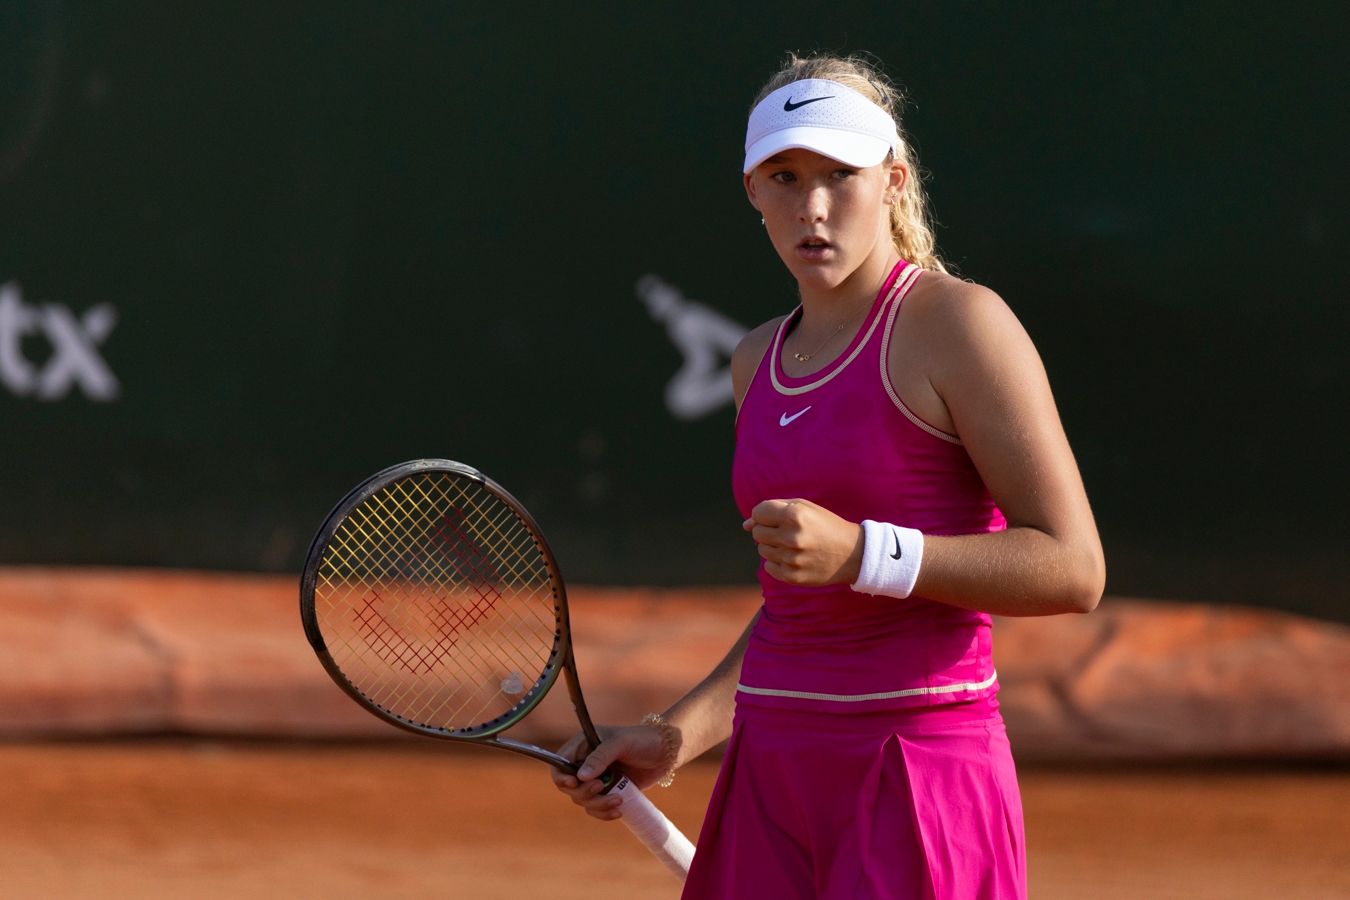 Андреева — самая молодая теннисистка после Гауфф, которая дошла до четвертьфинала WTA-1000